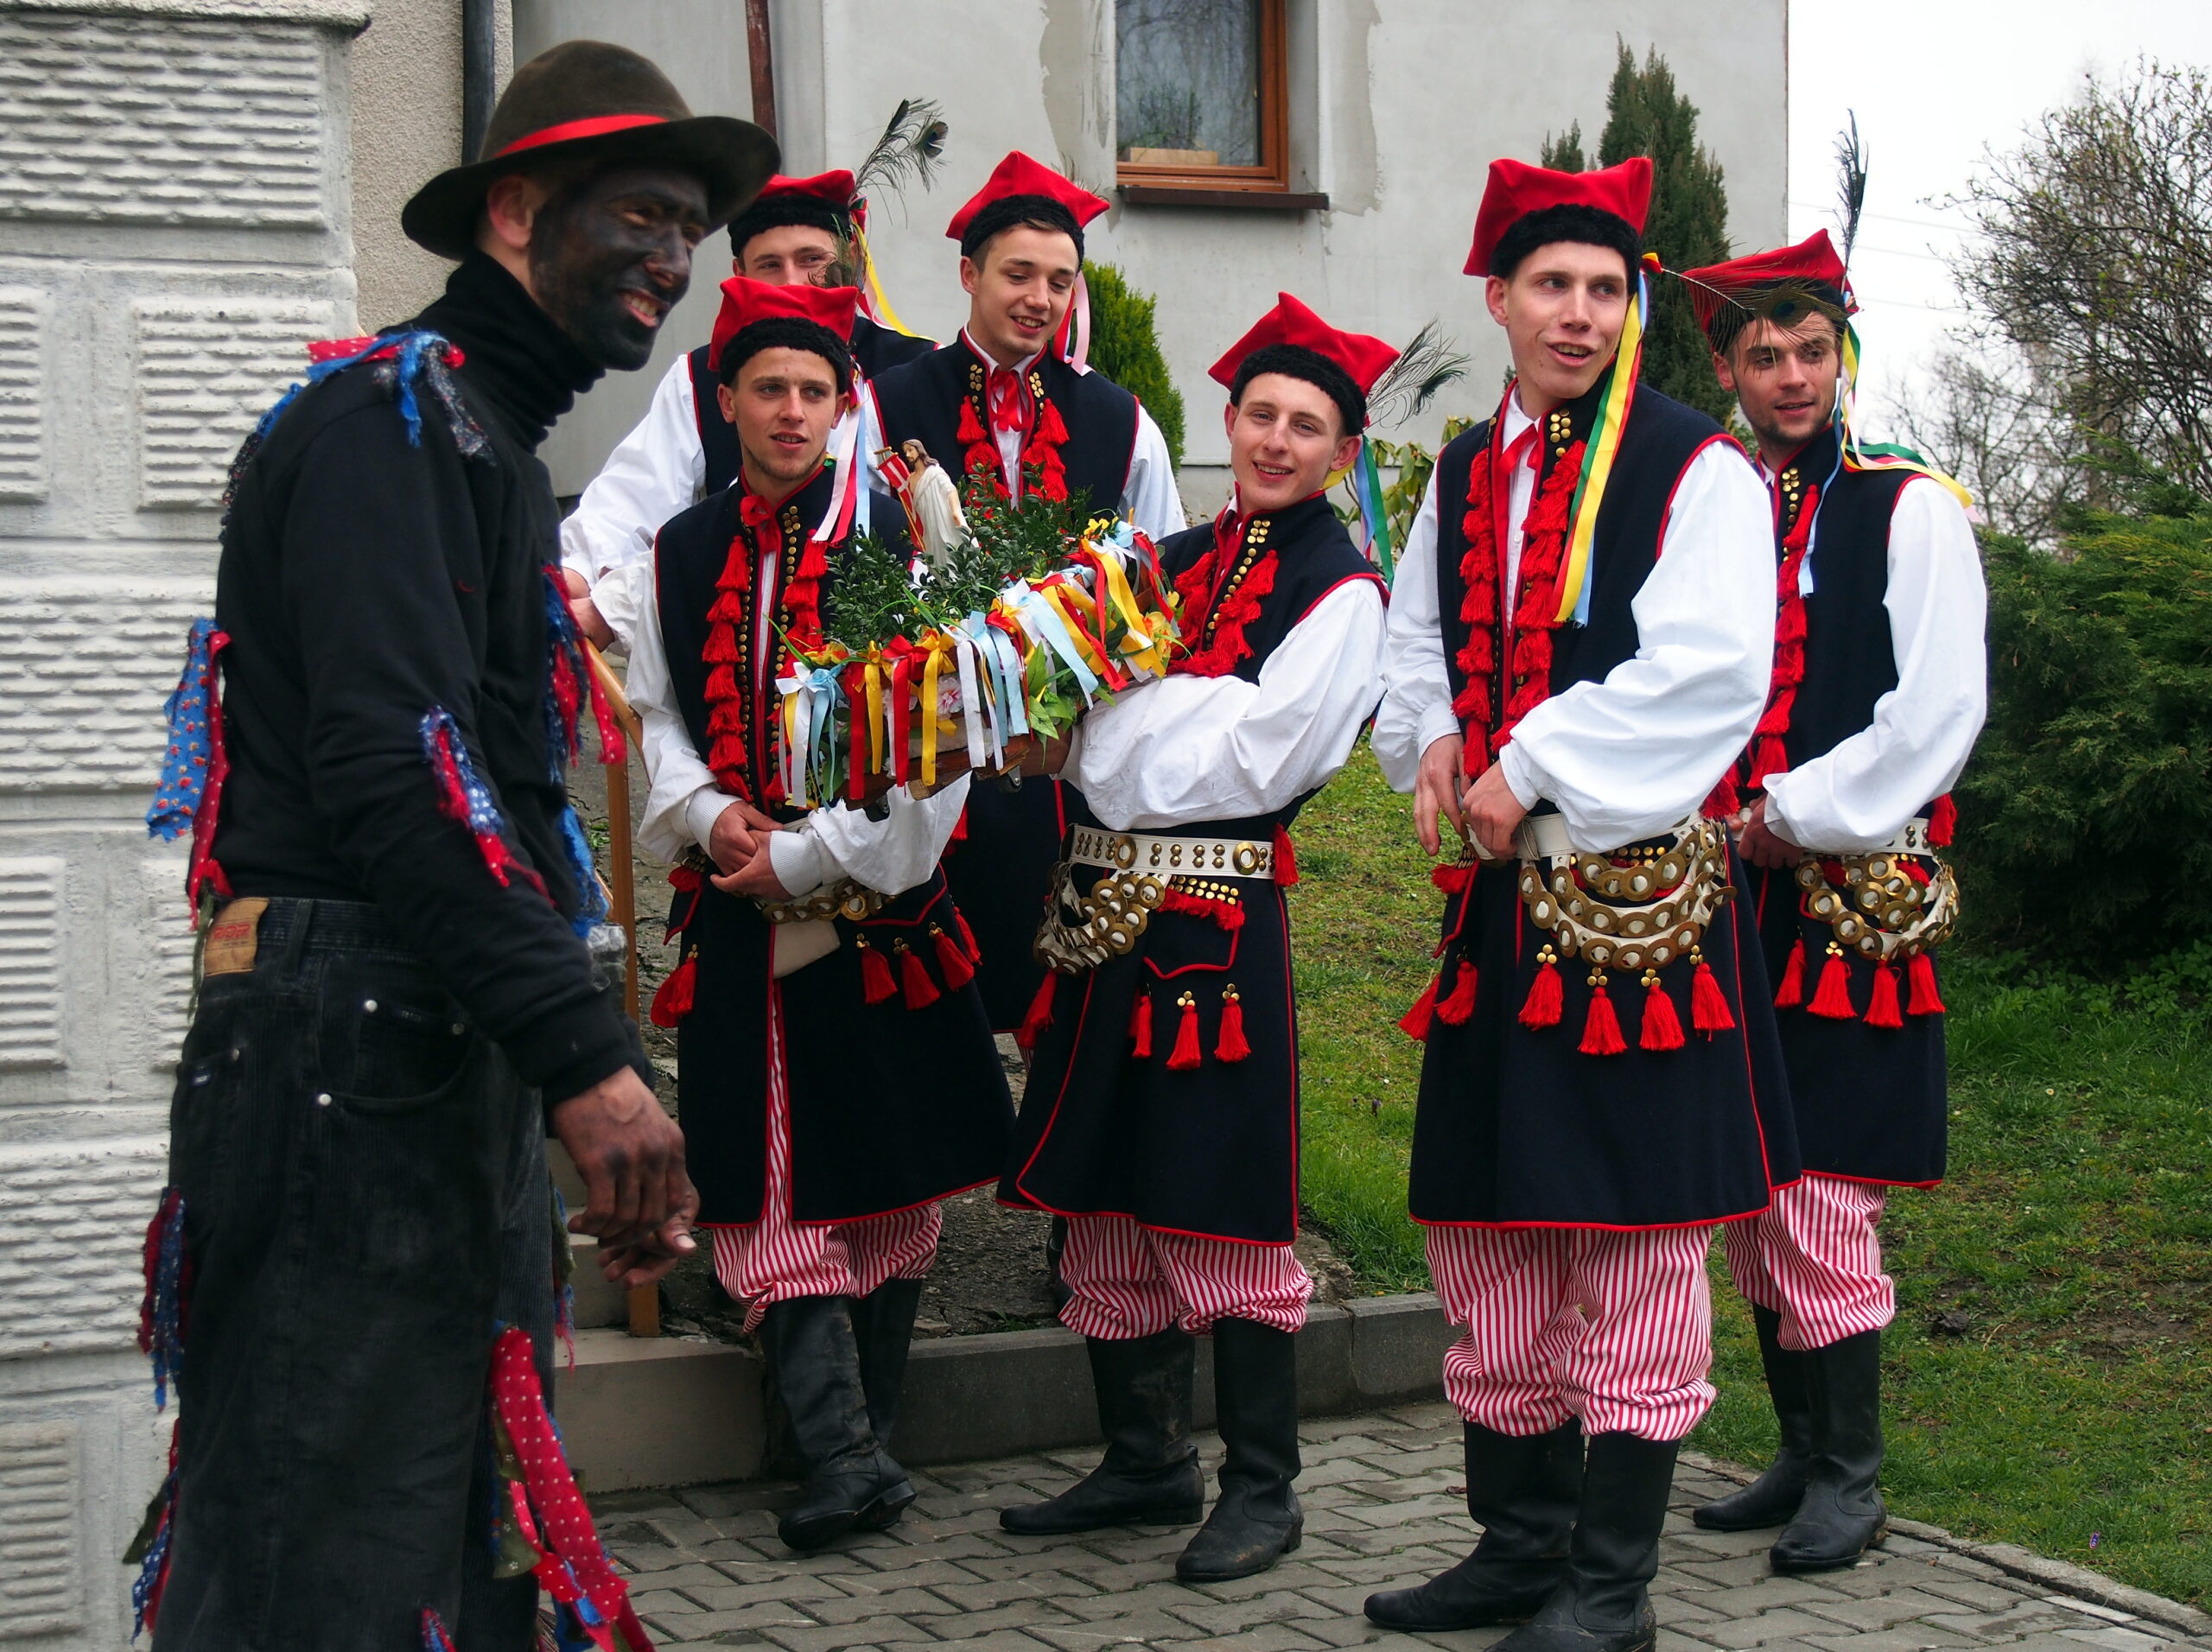 Uczestnicy obrzędu Siuda Baba przd domem. Sześciu mężczyzn ubranych w regionaln stroje krakowskie, jeden z usmoloną twarzą jako Siuda Baba.